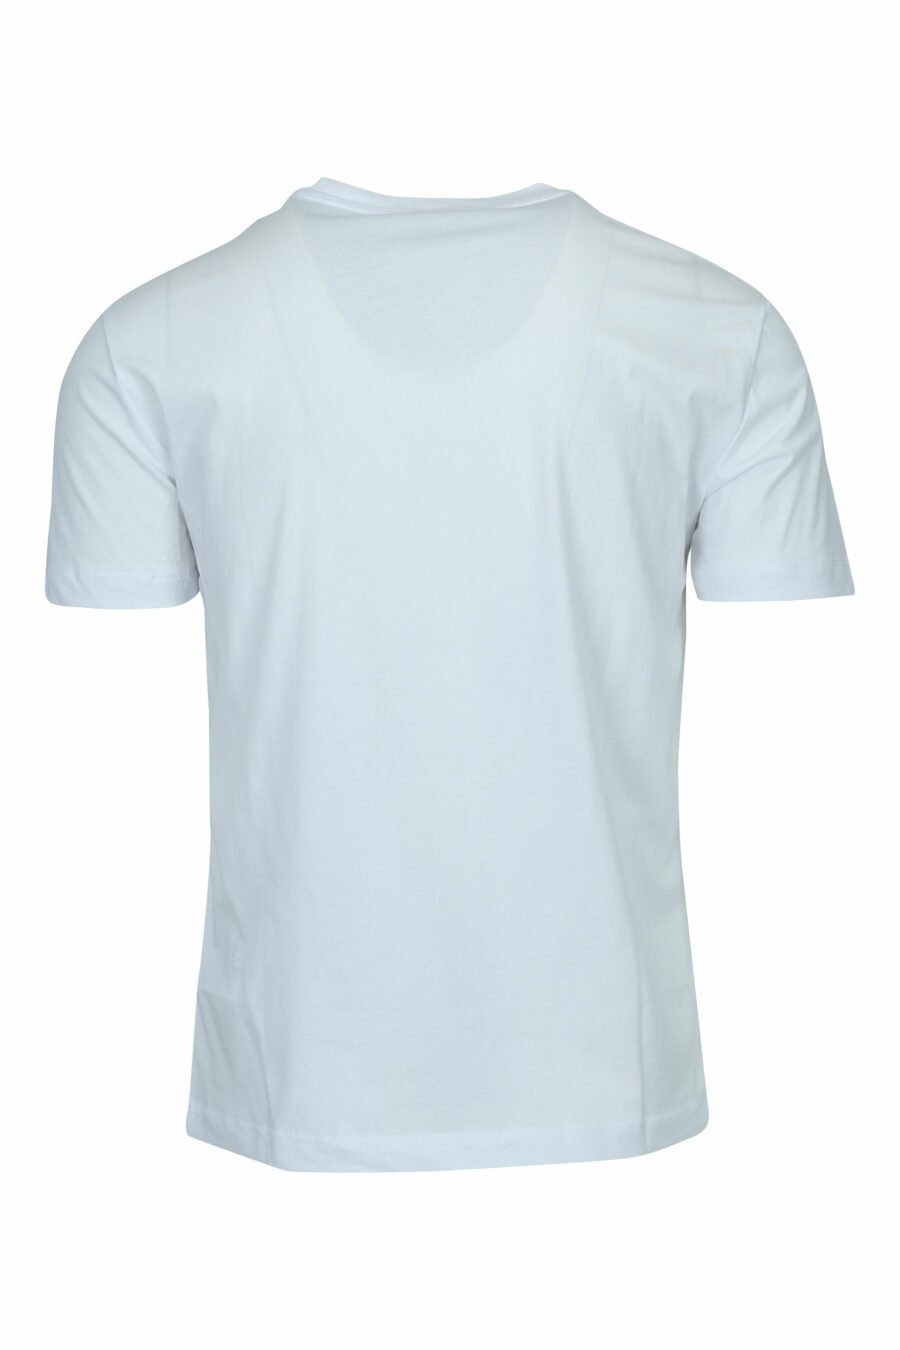 T-shirt branca com maxilogo "lux identity" em degradé - 8057970673118 1